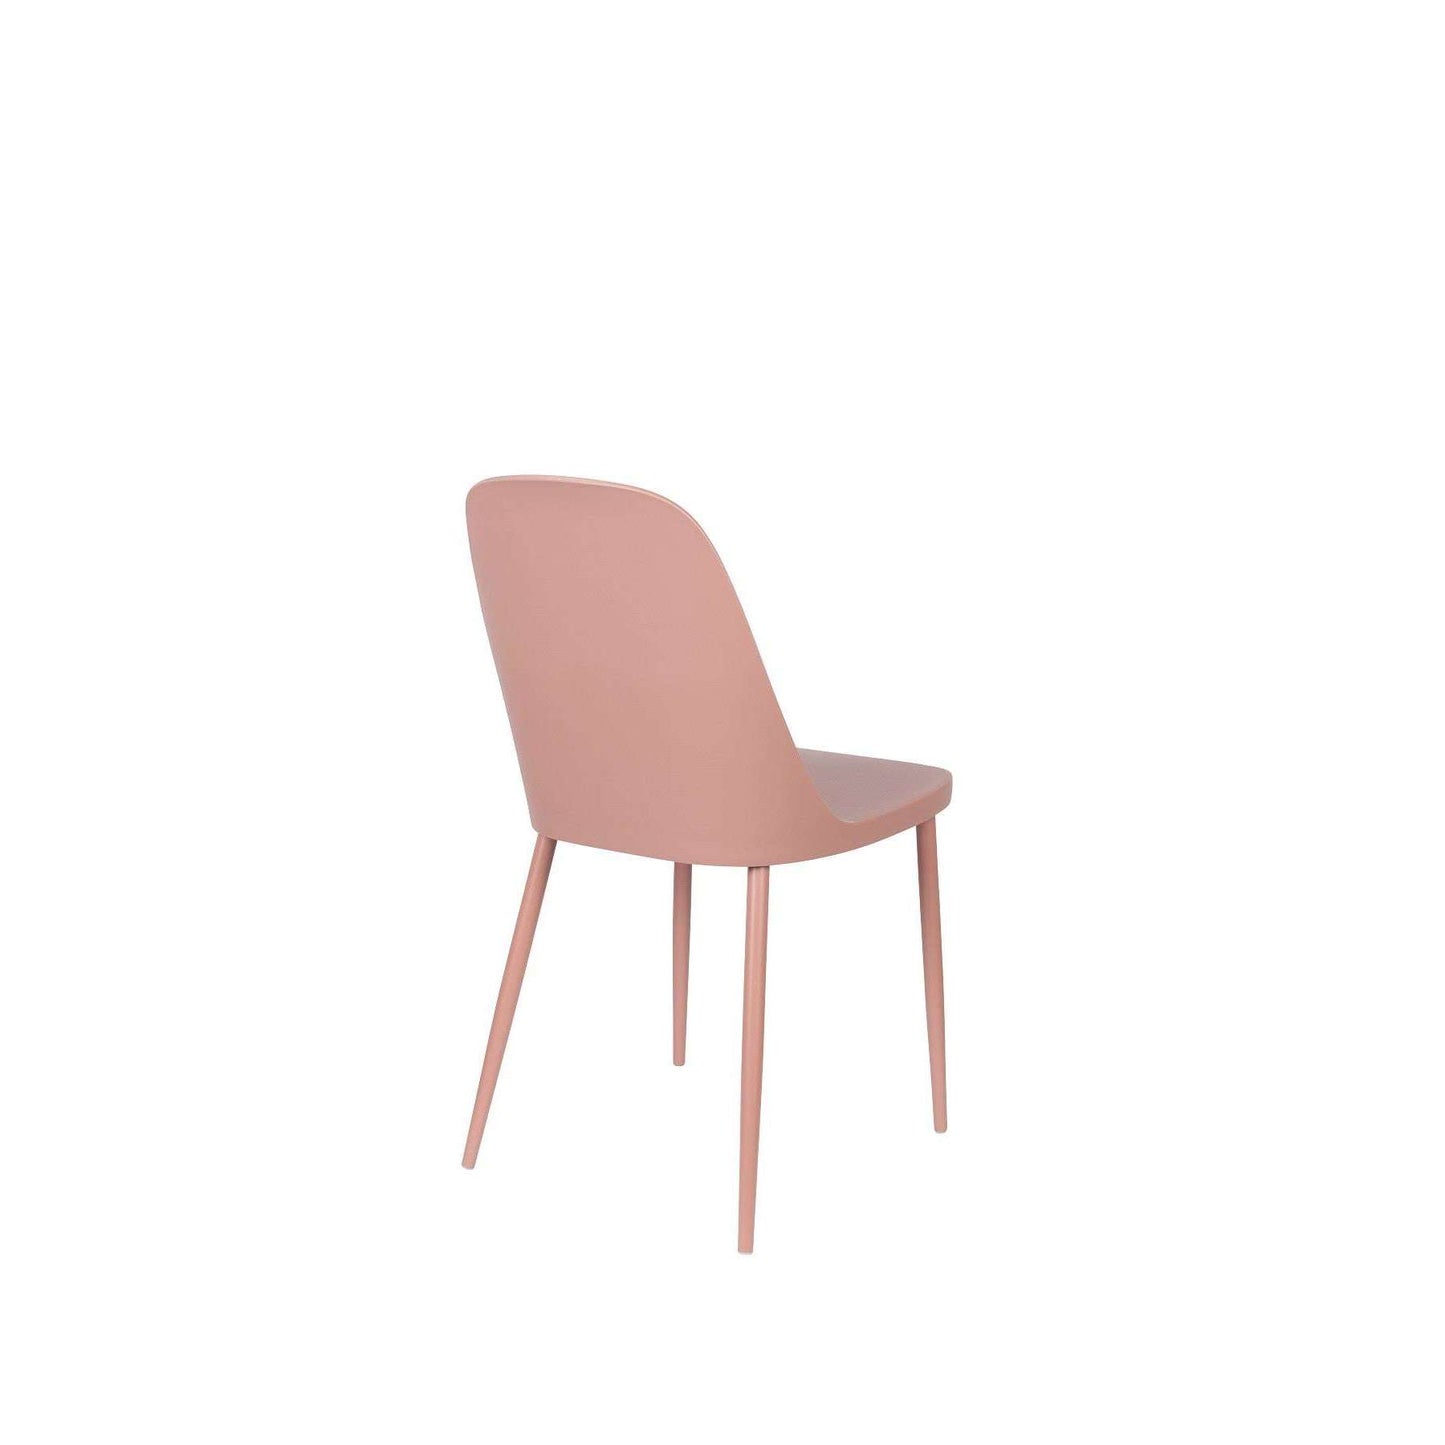 Staerkk stoel pipll roze 53,5 x 46 x 85 cm